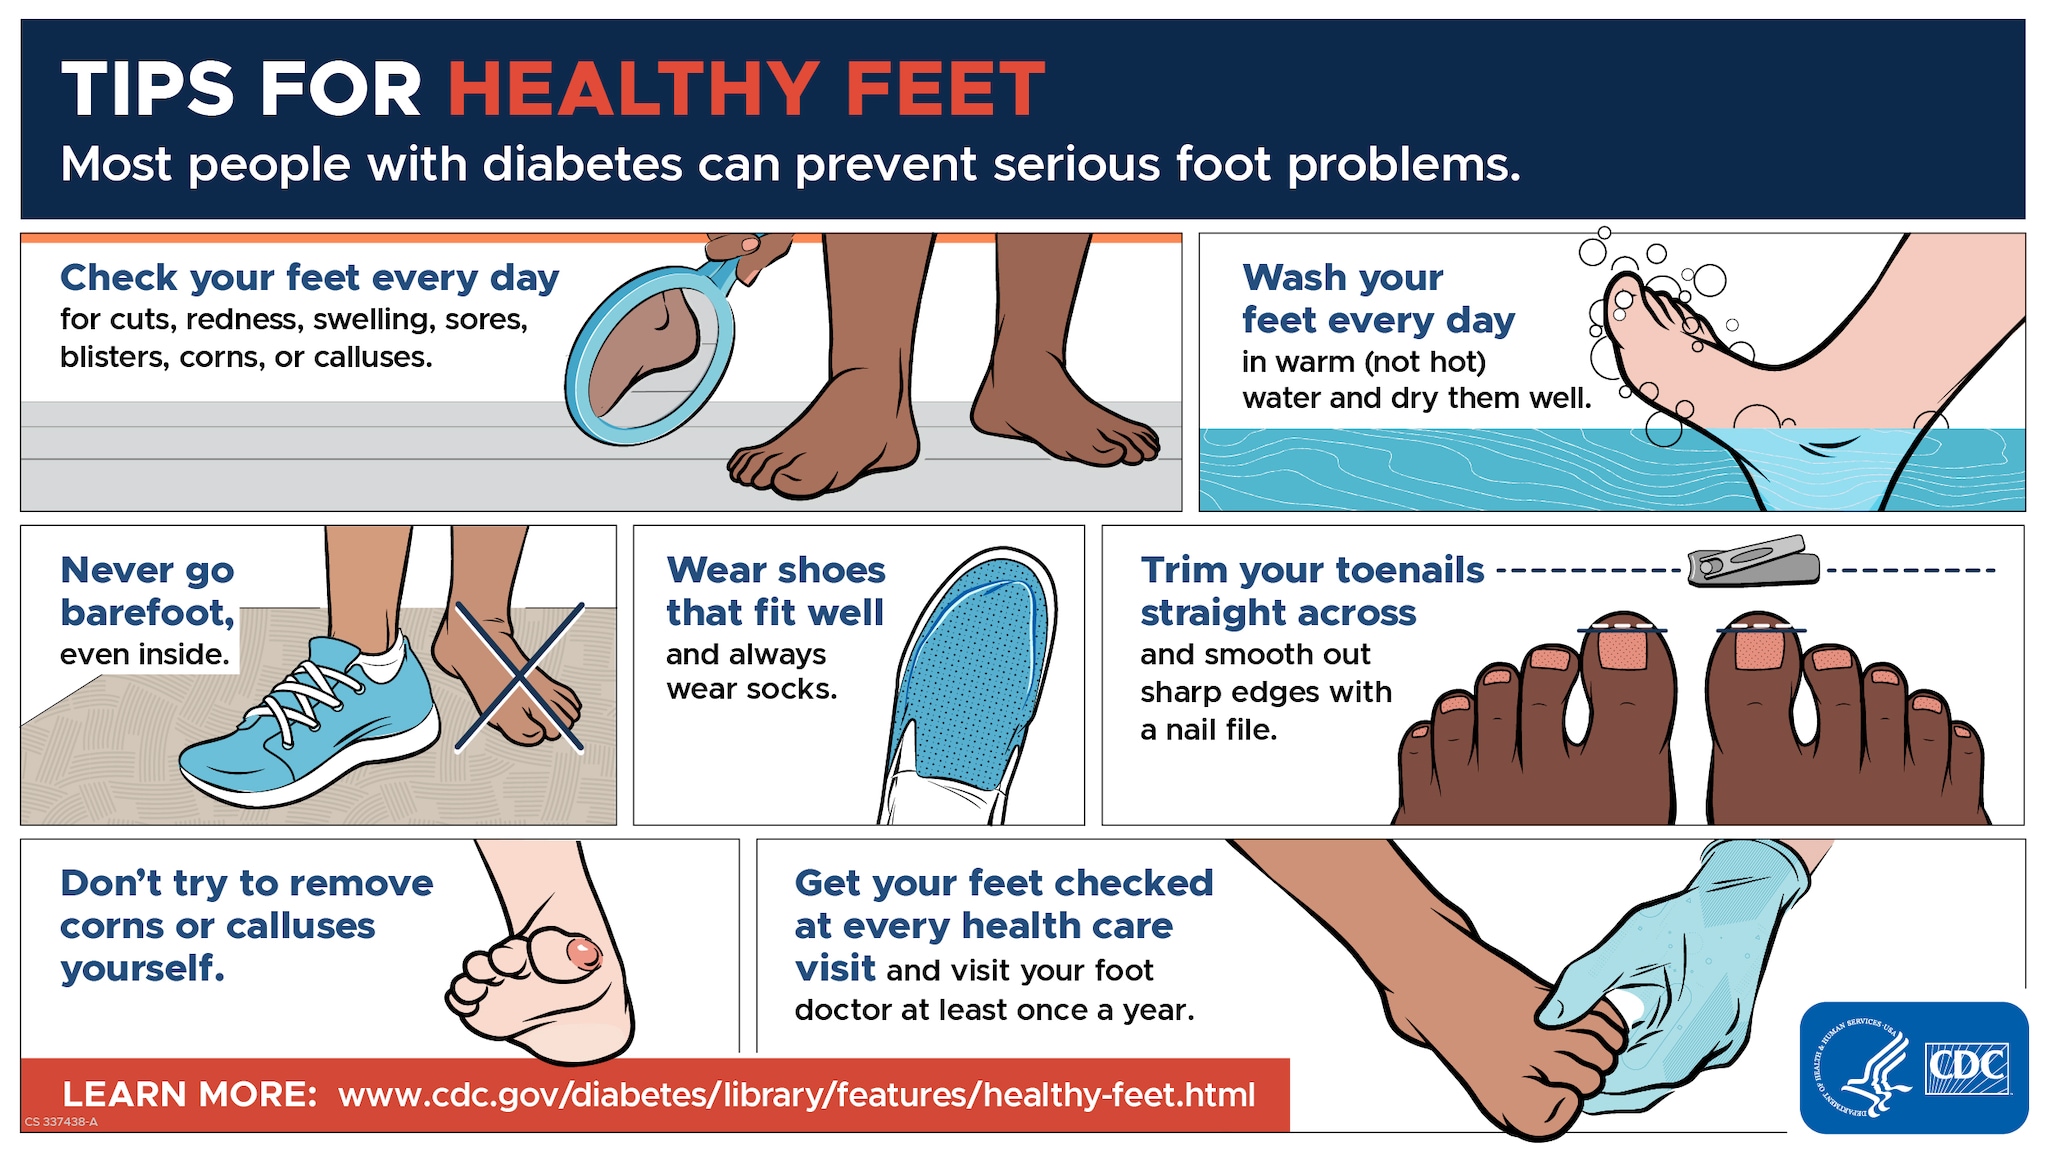 Diabetic foot care advice